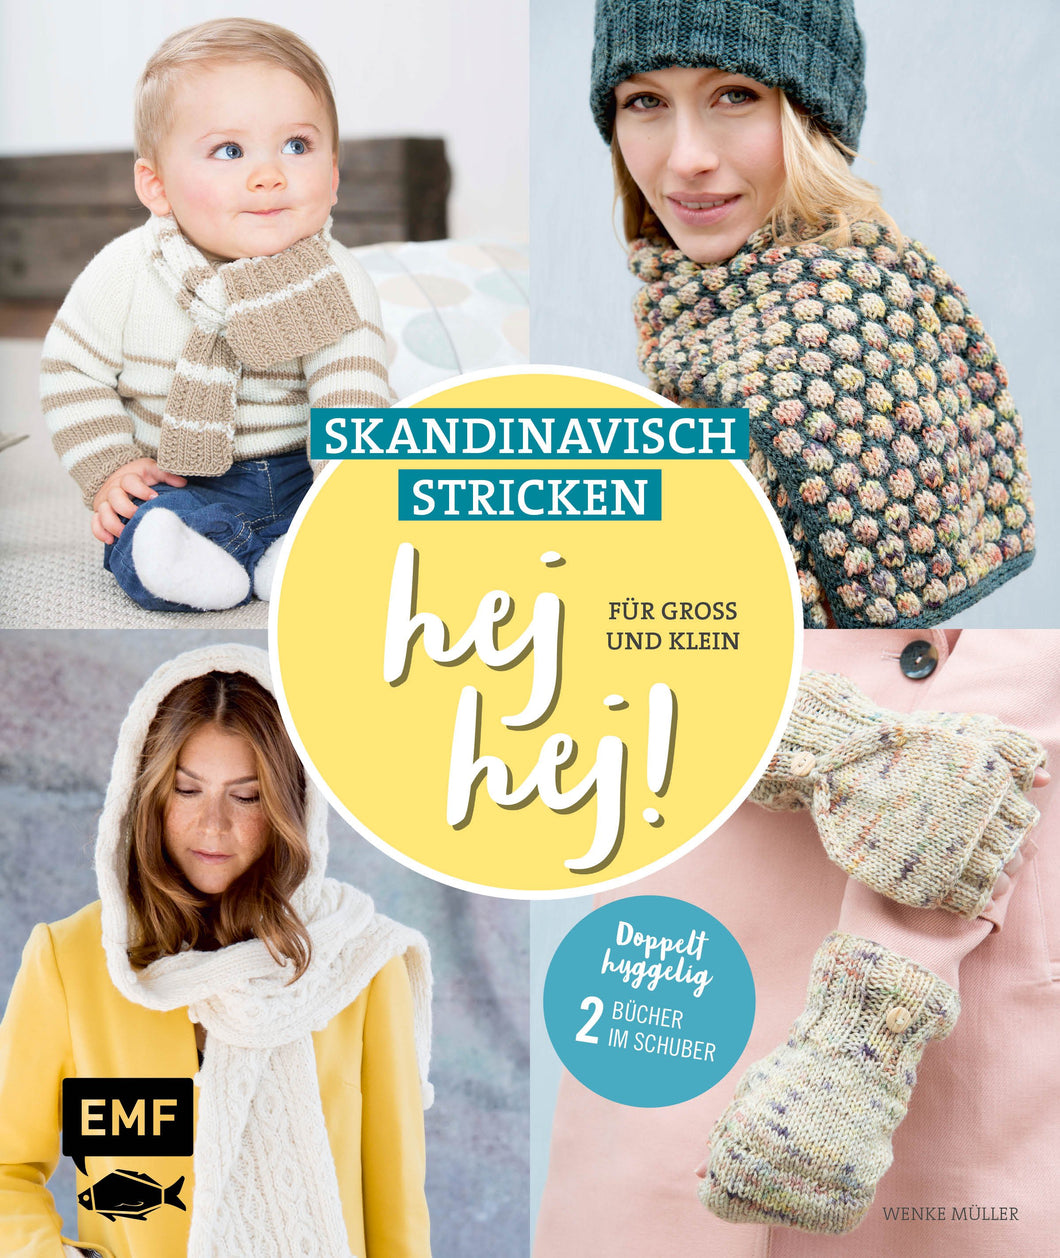 HEJ HEJ! Skandinavisch stricken für Gross und Klein